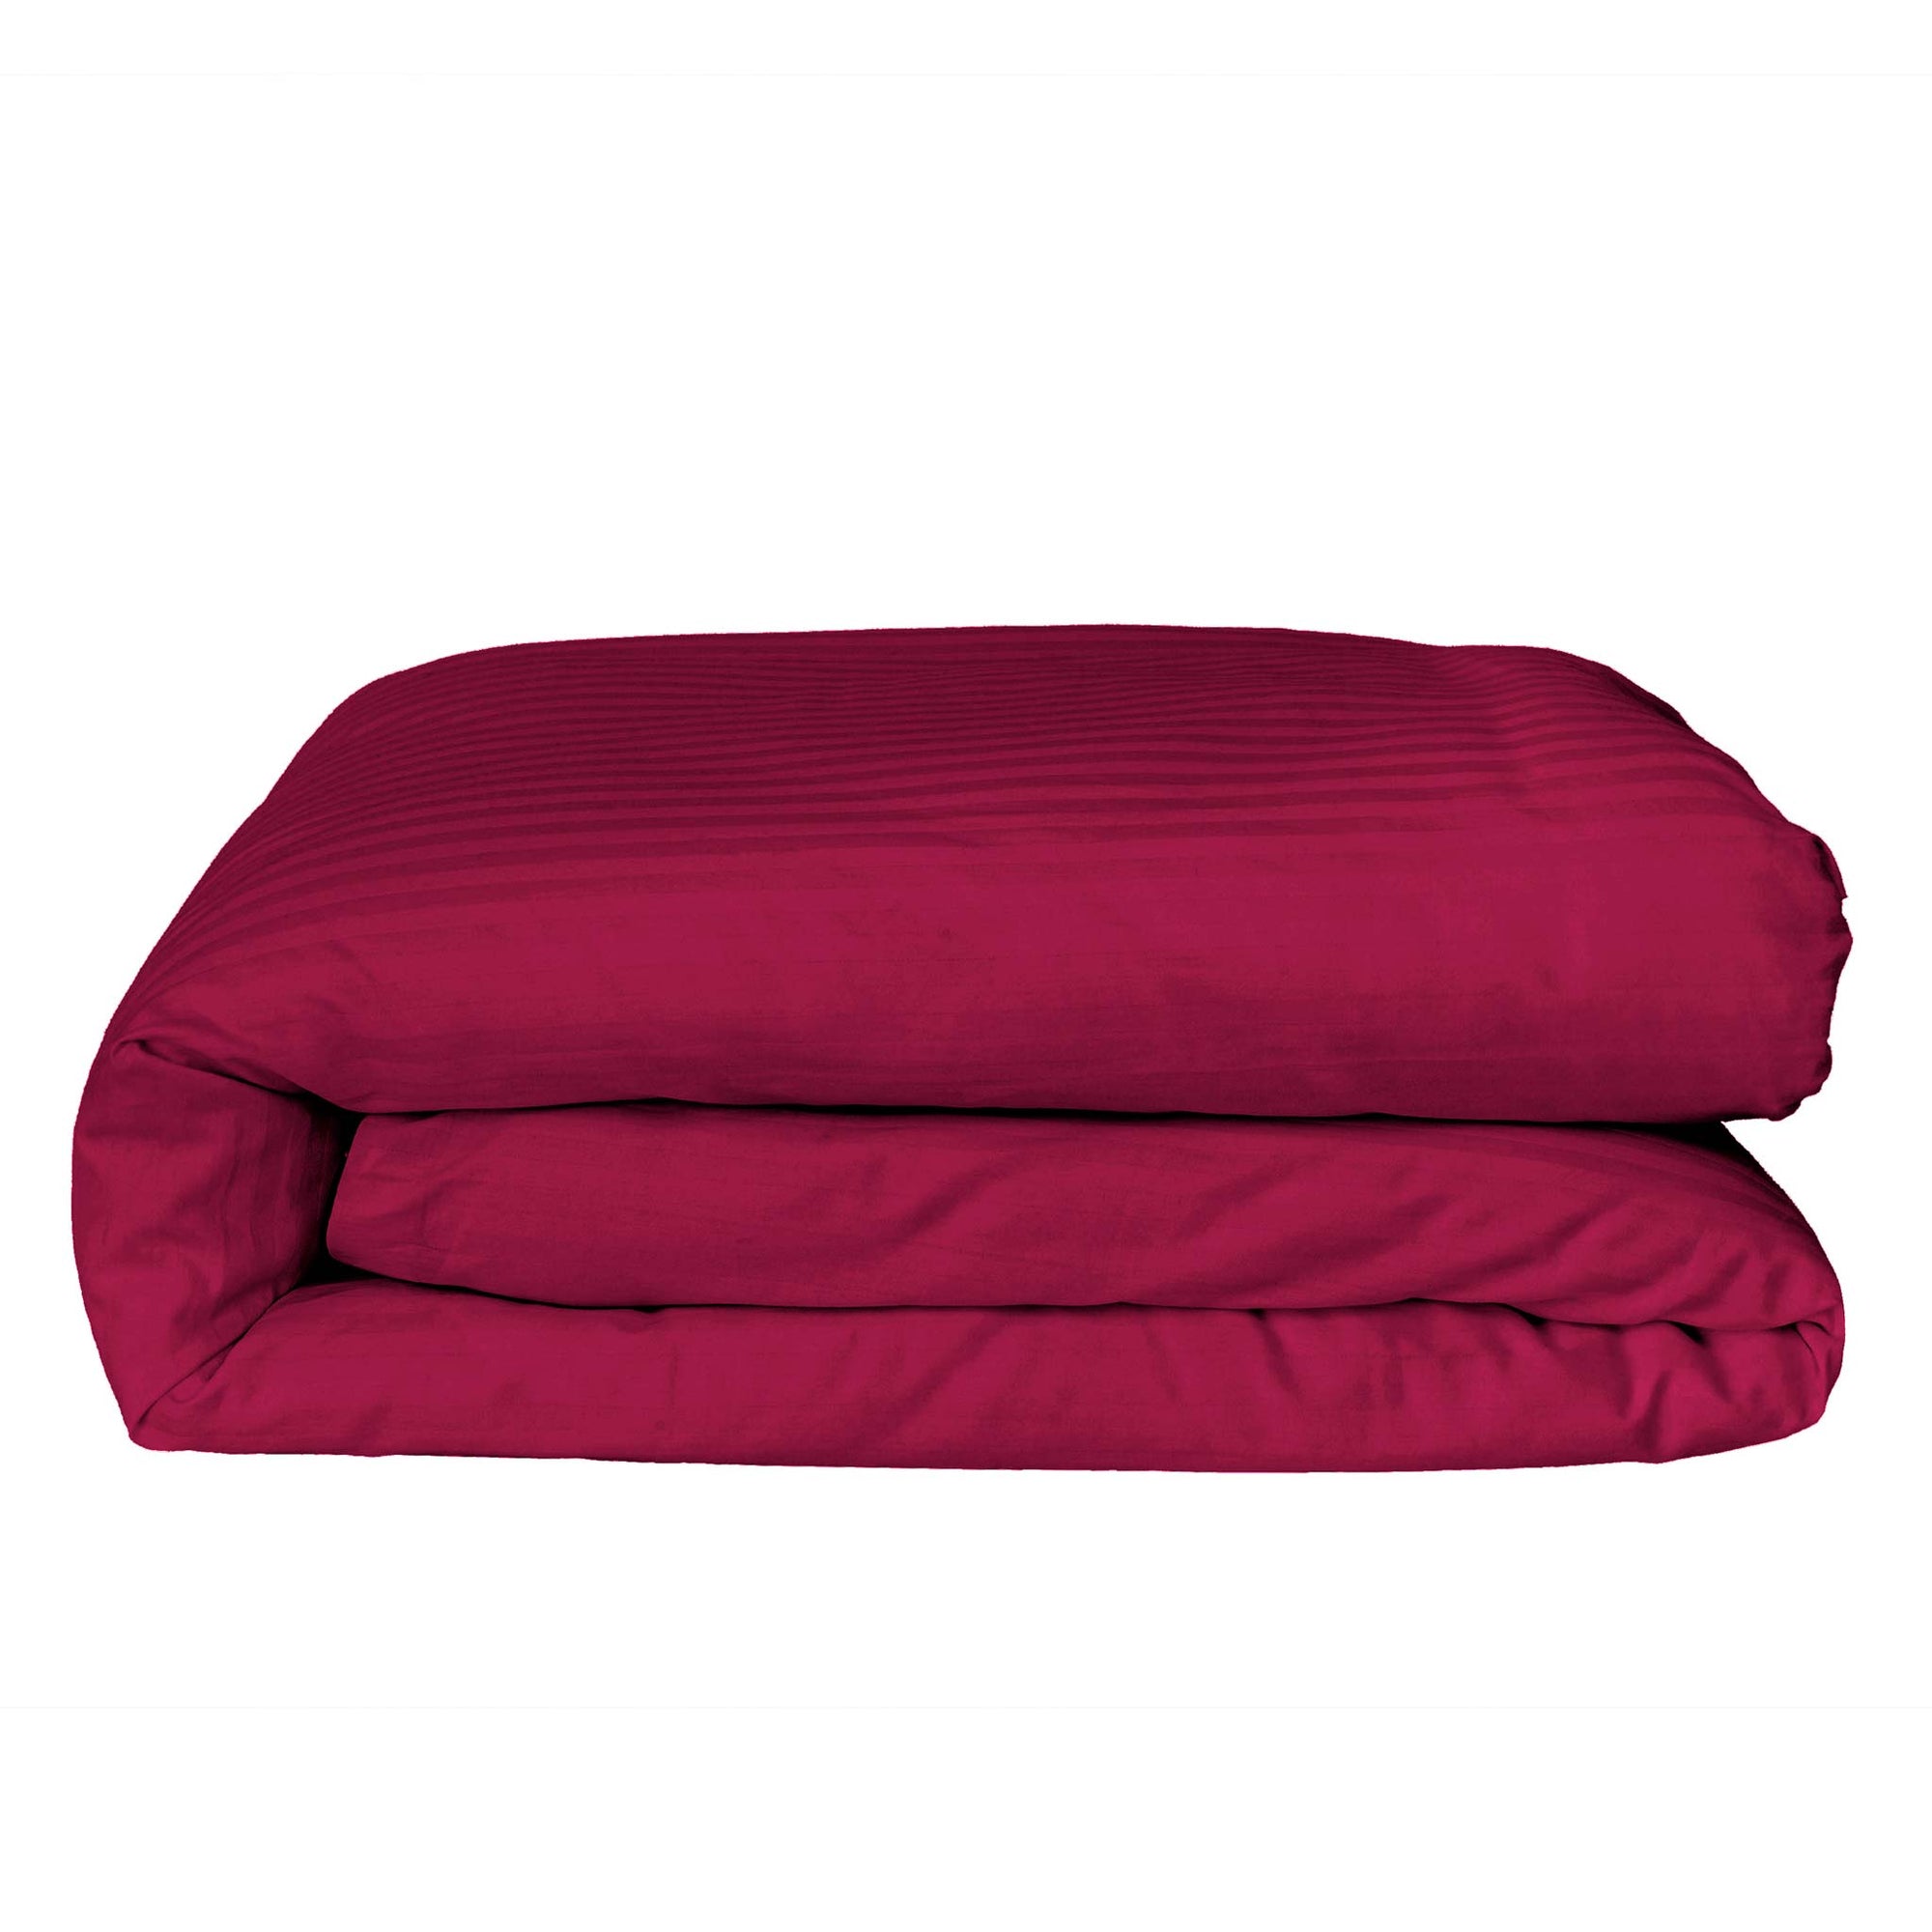 Einteiliger burgunderrot gestreifter Bettbezug aus 100 % Baumwollsatin